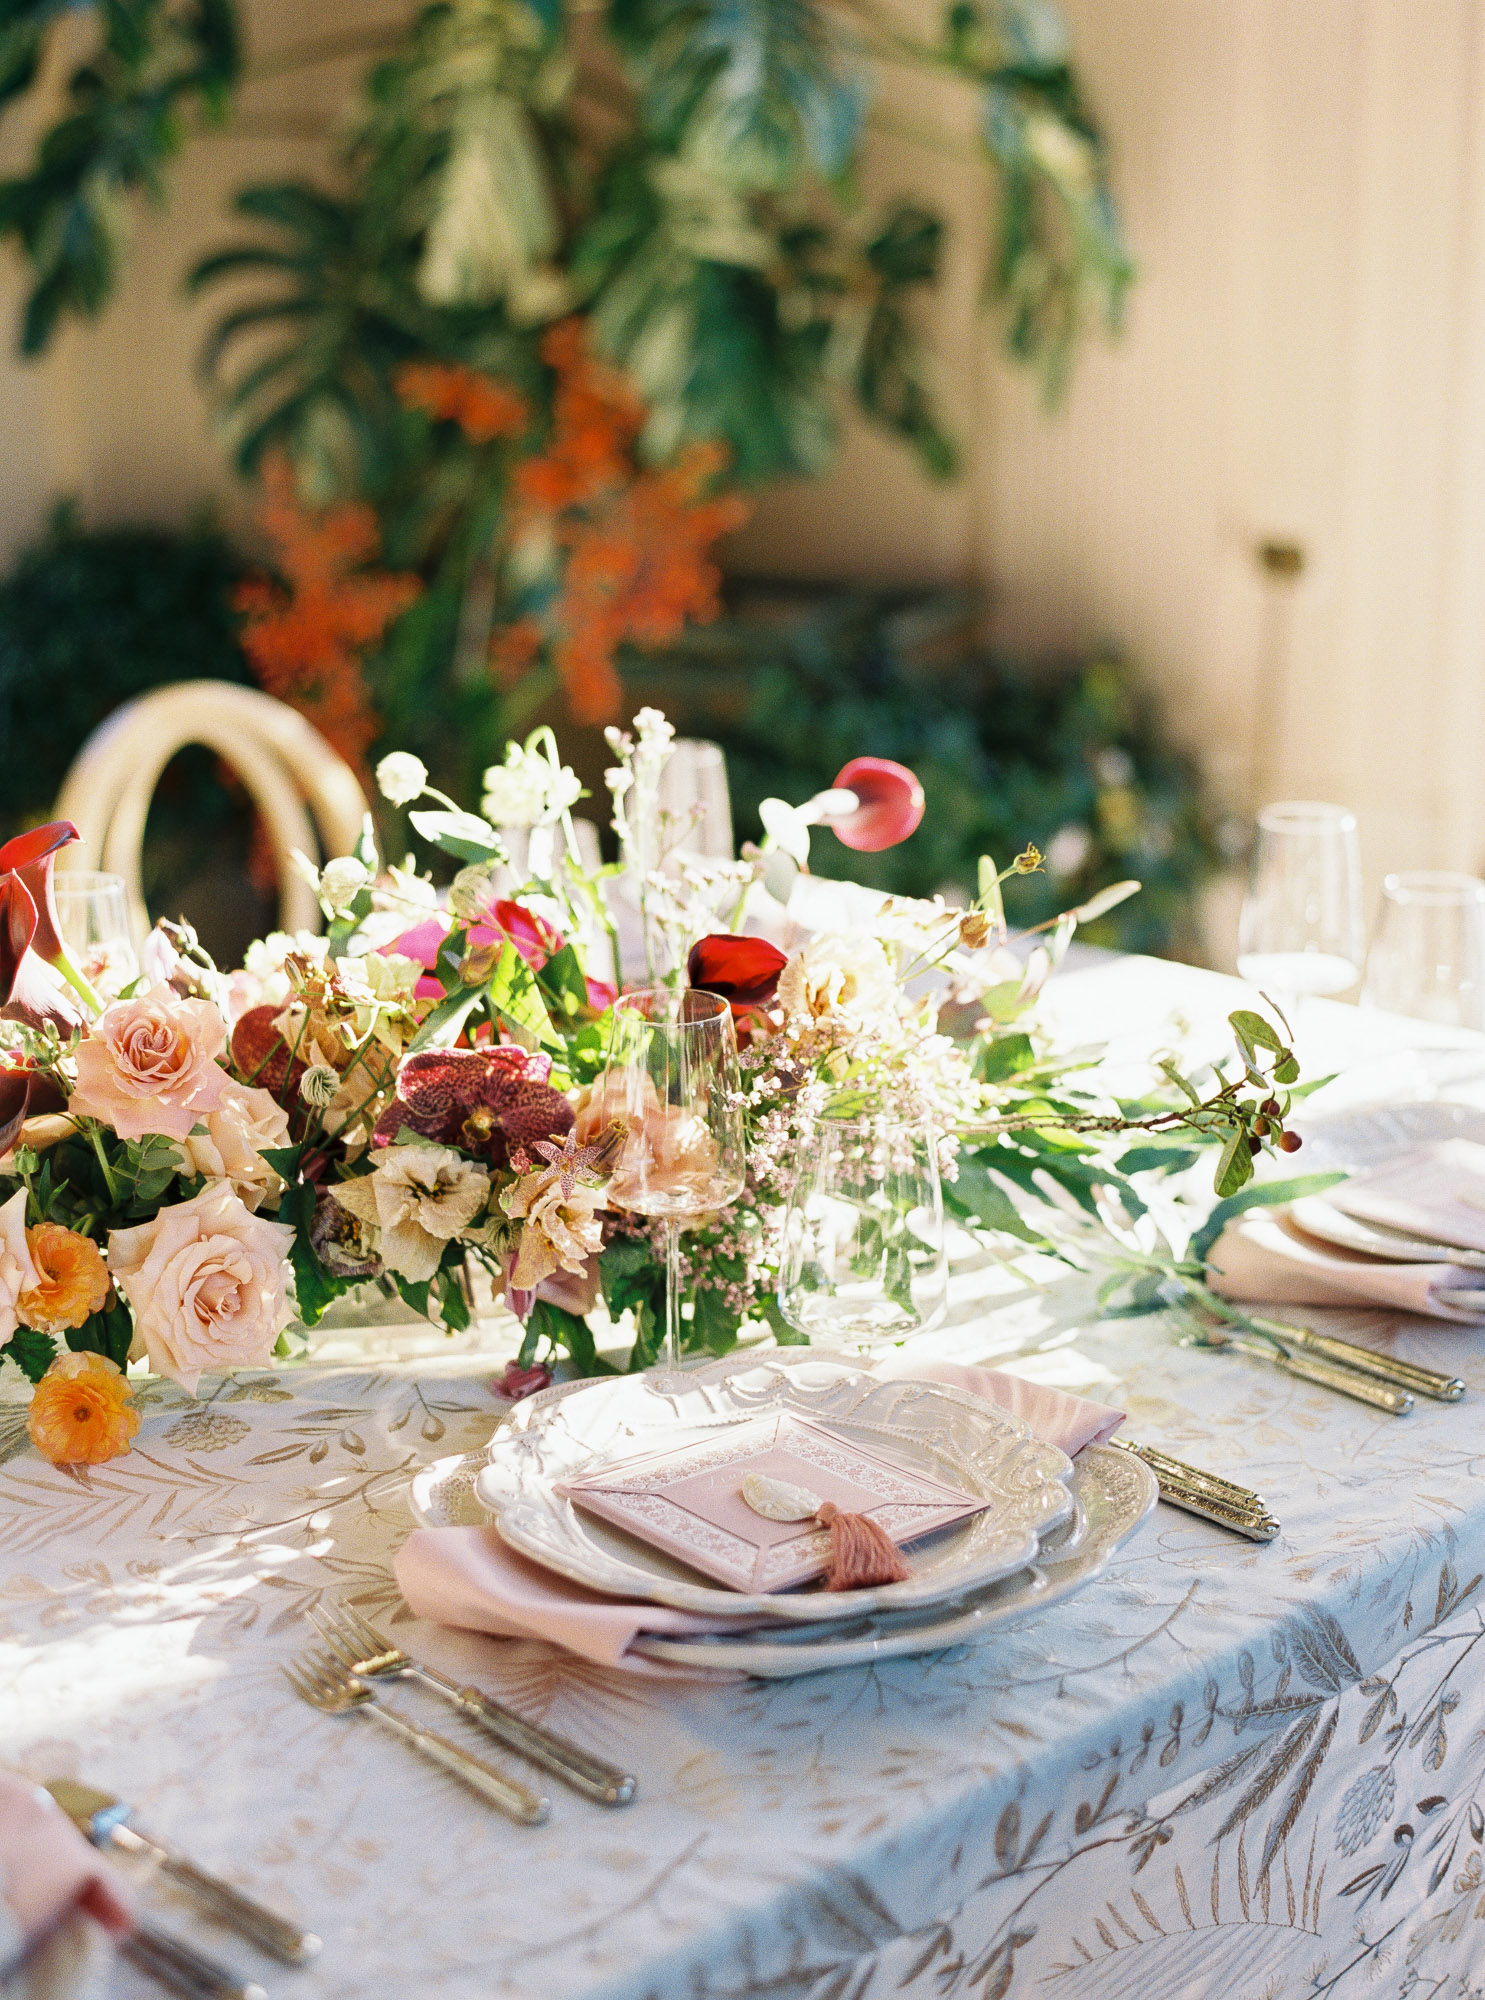 jp-liriano-photography-wedding-reception-decor-filoli-garden-california-25